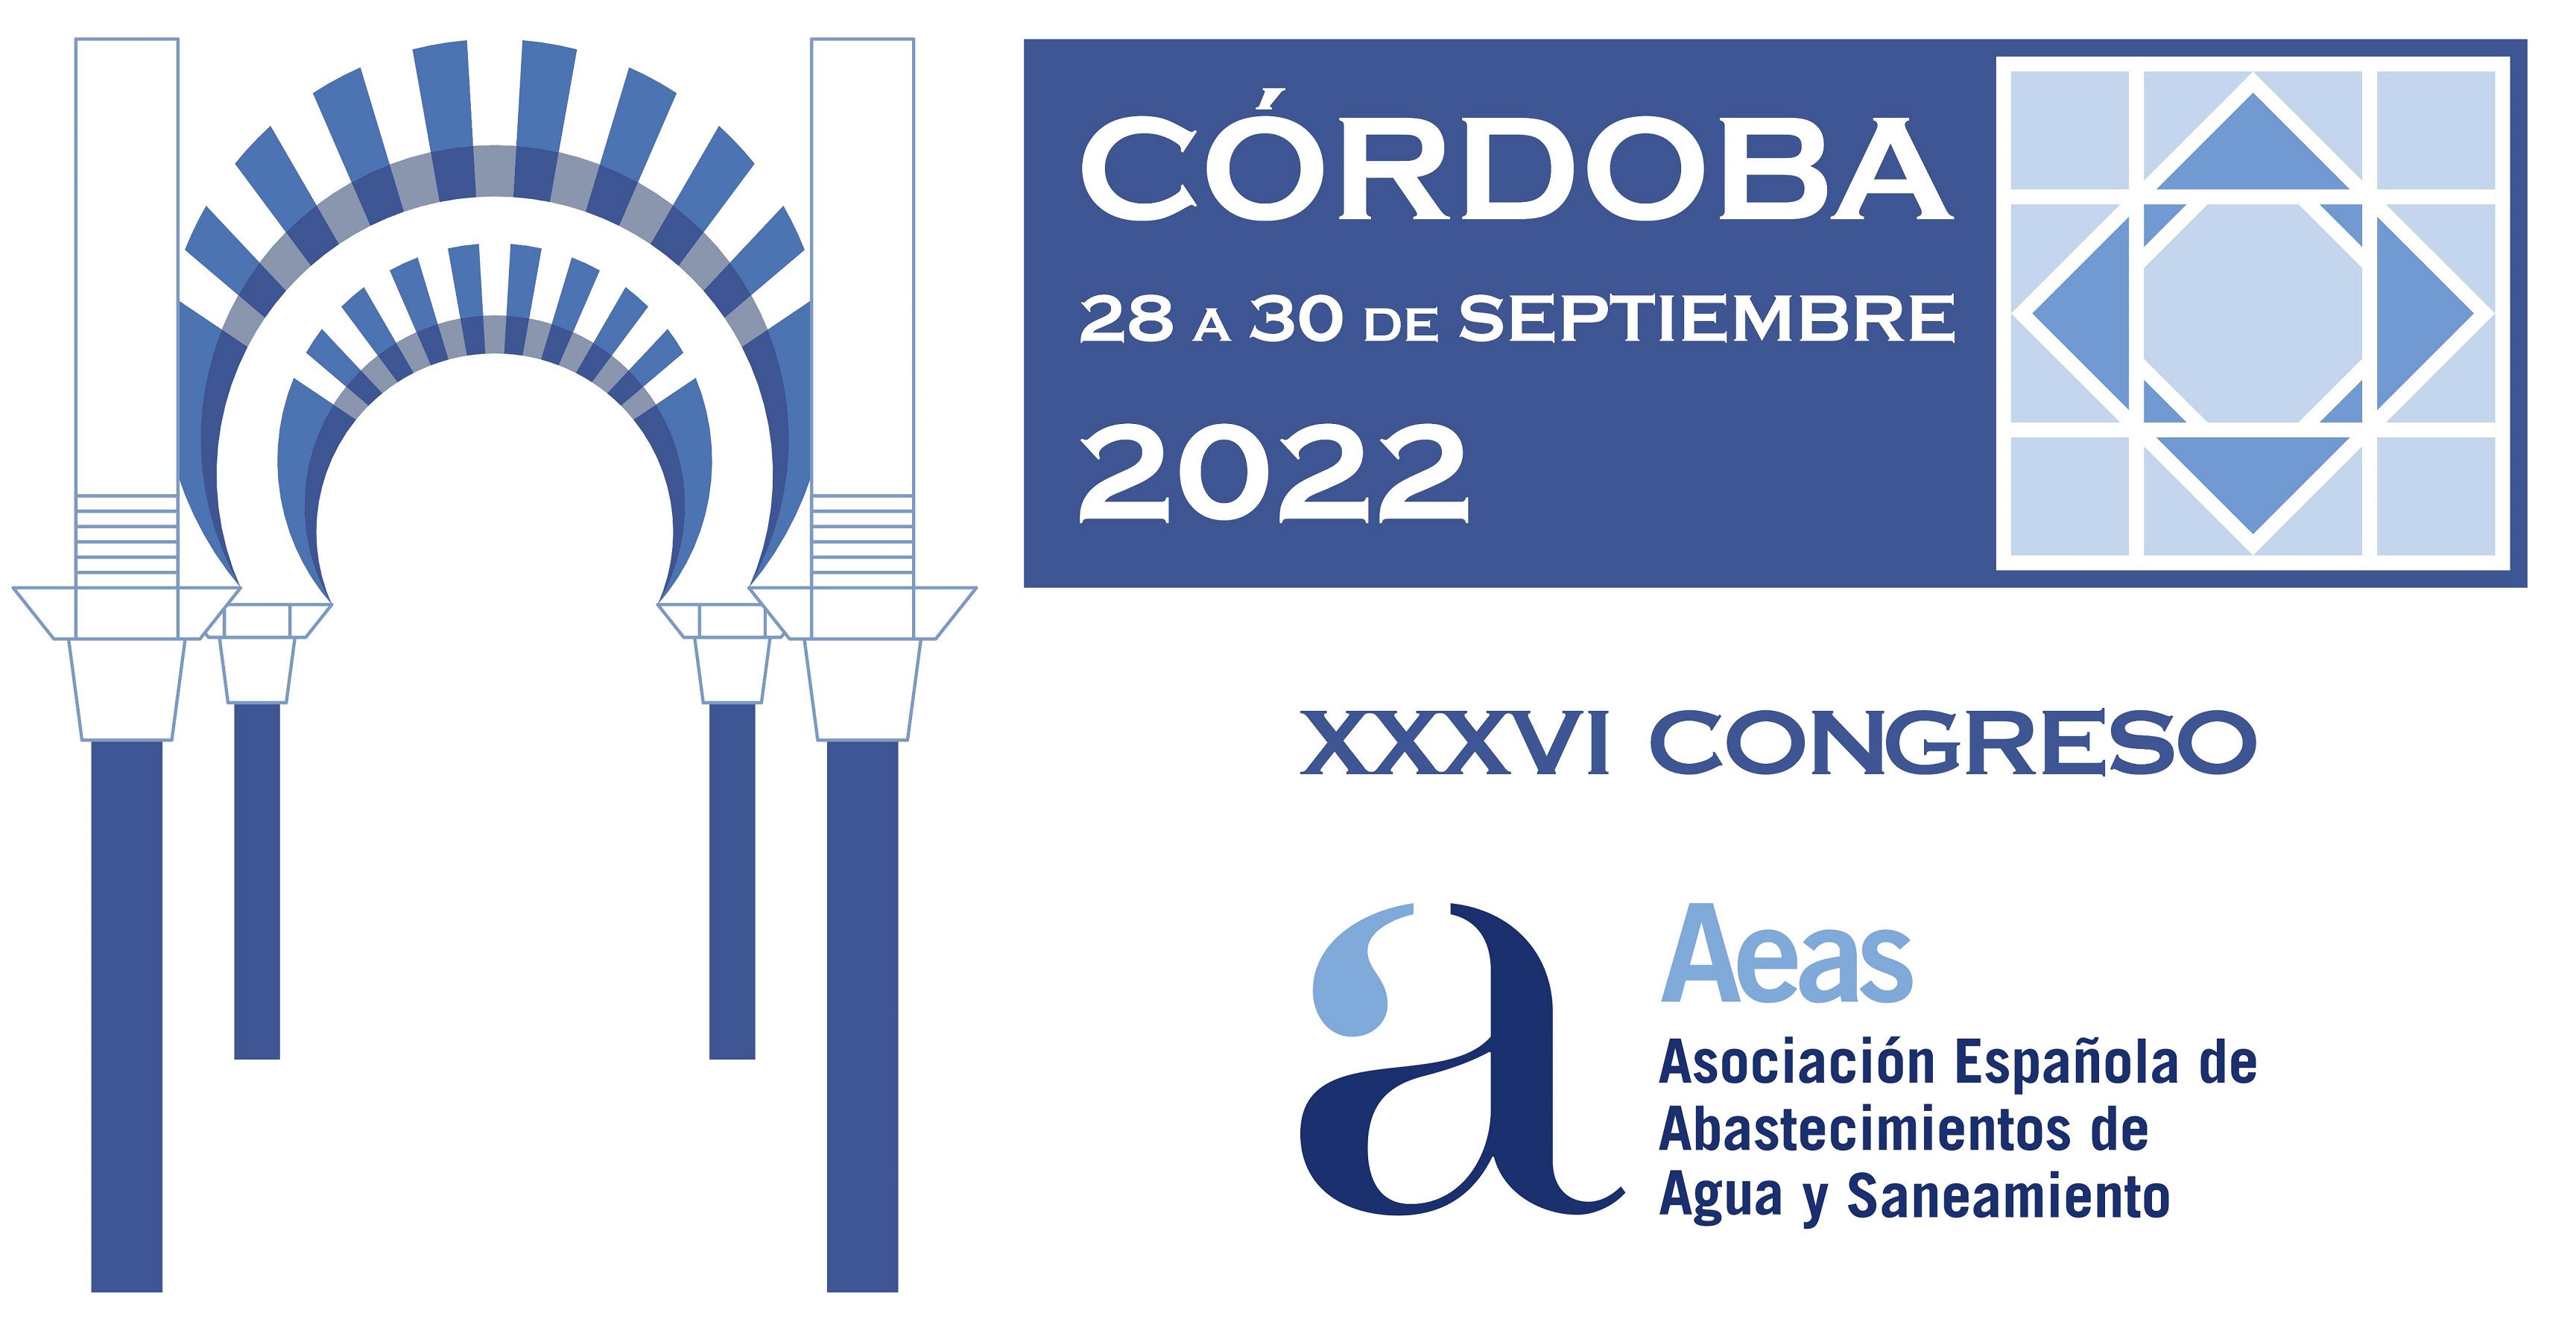 XXXVI Congreso de la Asociación Española de Abastecimientos de Agua y Saneamiento AEAS